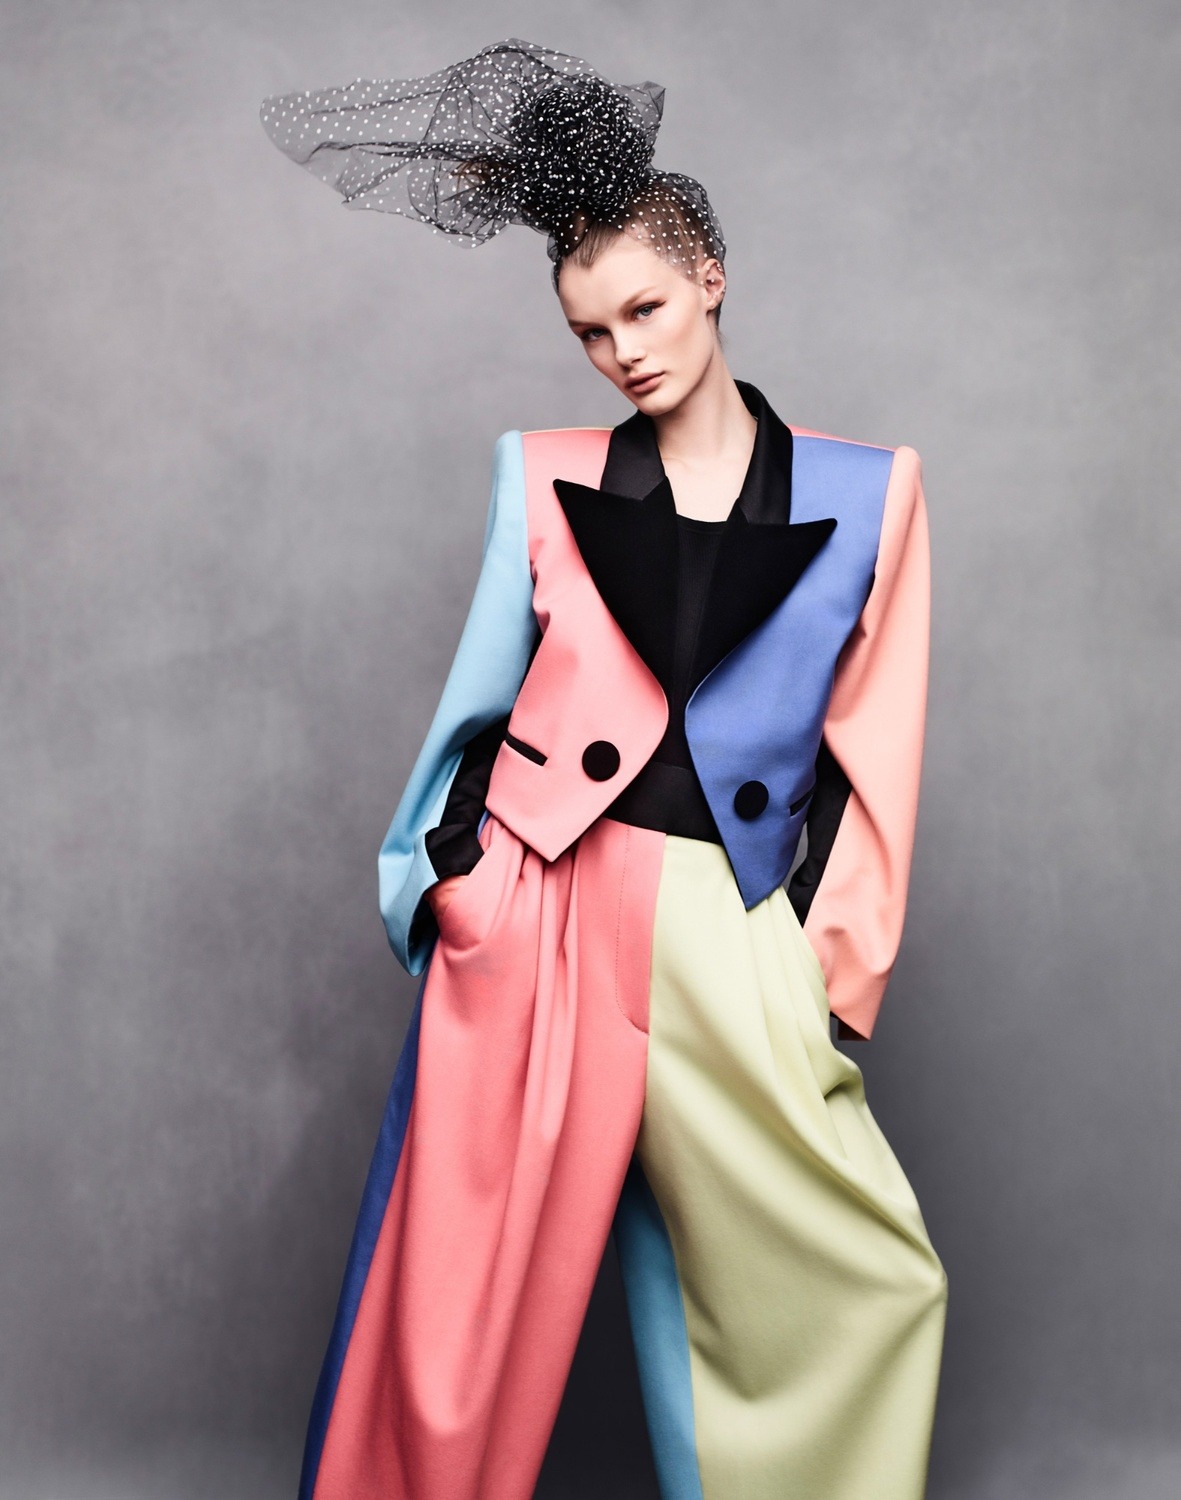 Kris Grikaite by Solve Sundsbo for Vogue China Jan 2019 (4).jpg